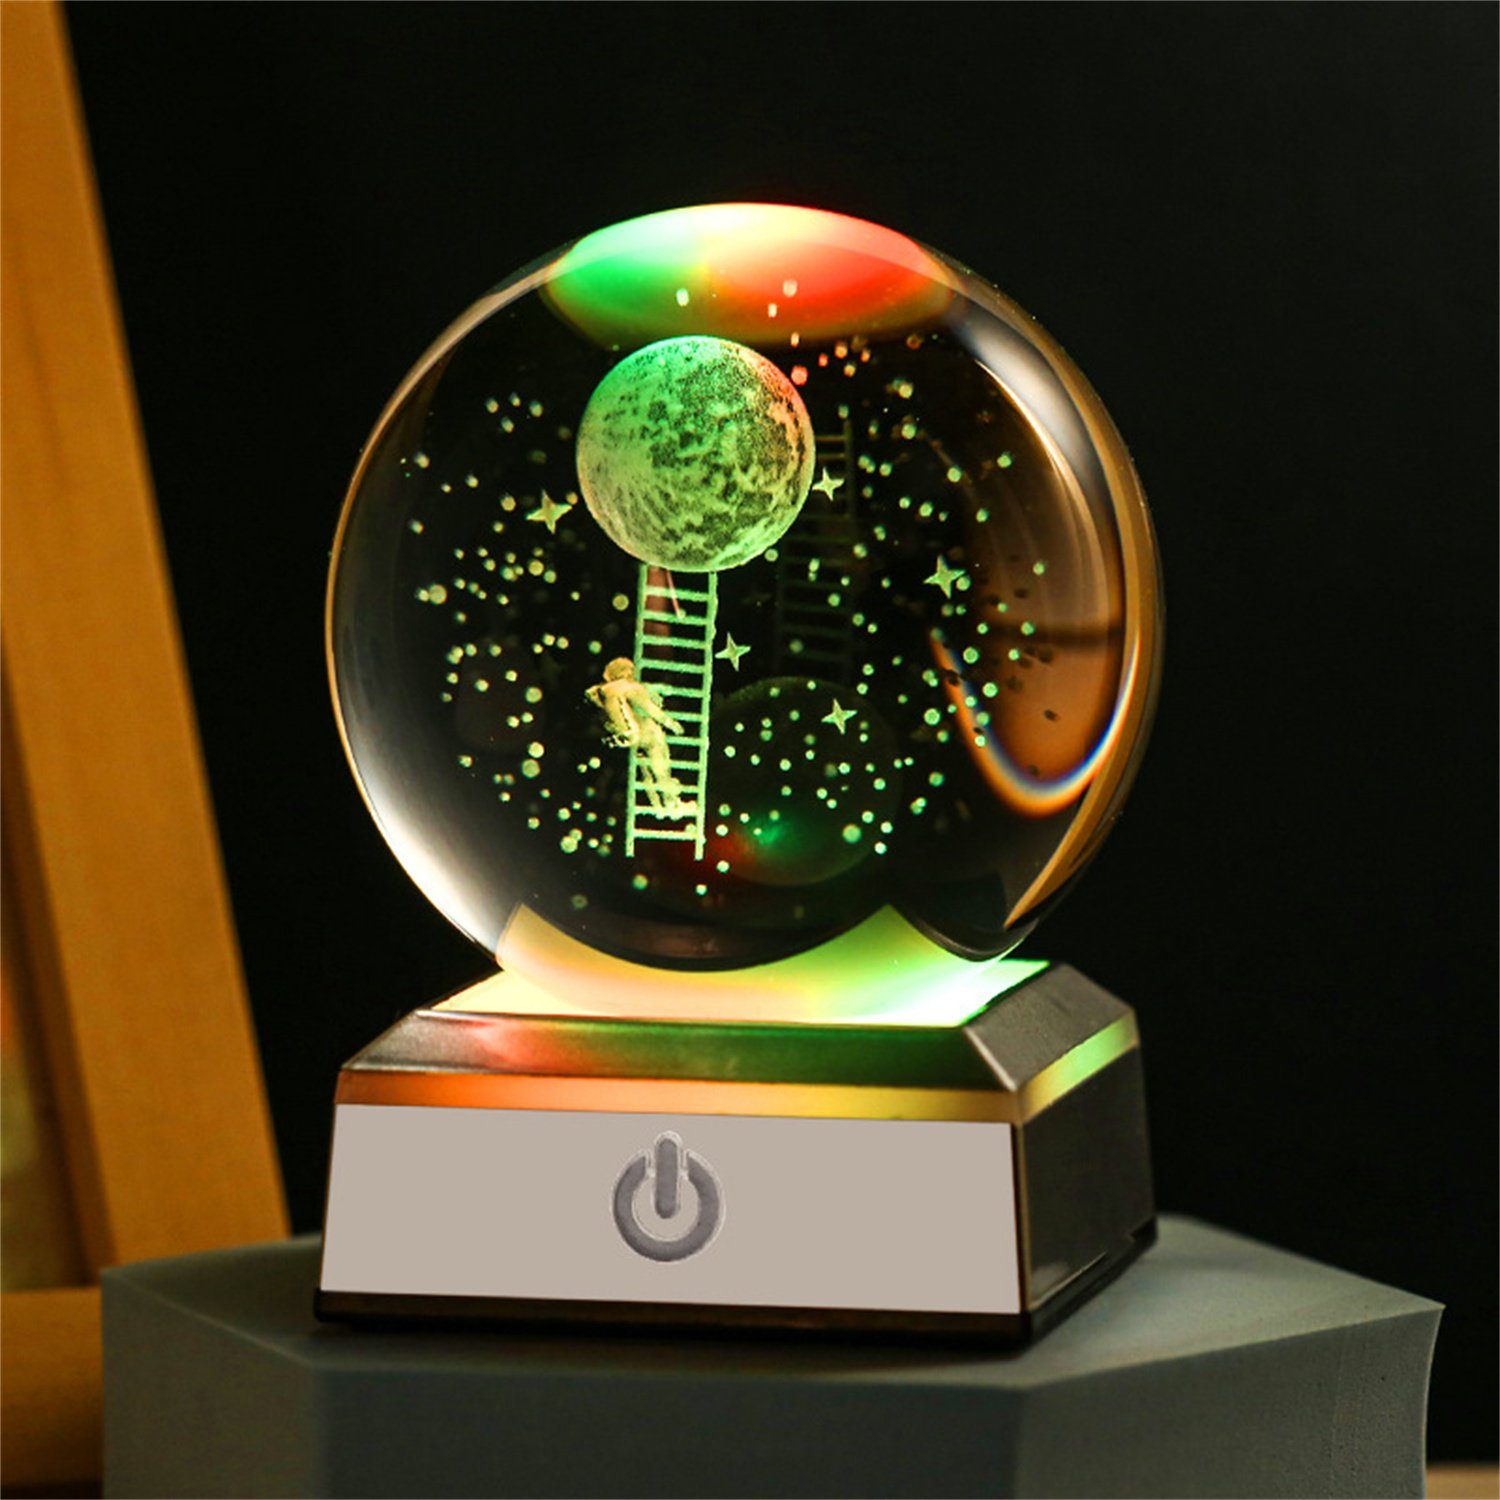 autolock LED Nachtlicht Nachtlicht,3D Blume des Lebens Kristallkugel-Lampe mit LED-Basis